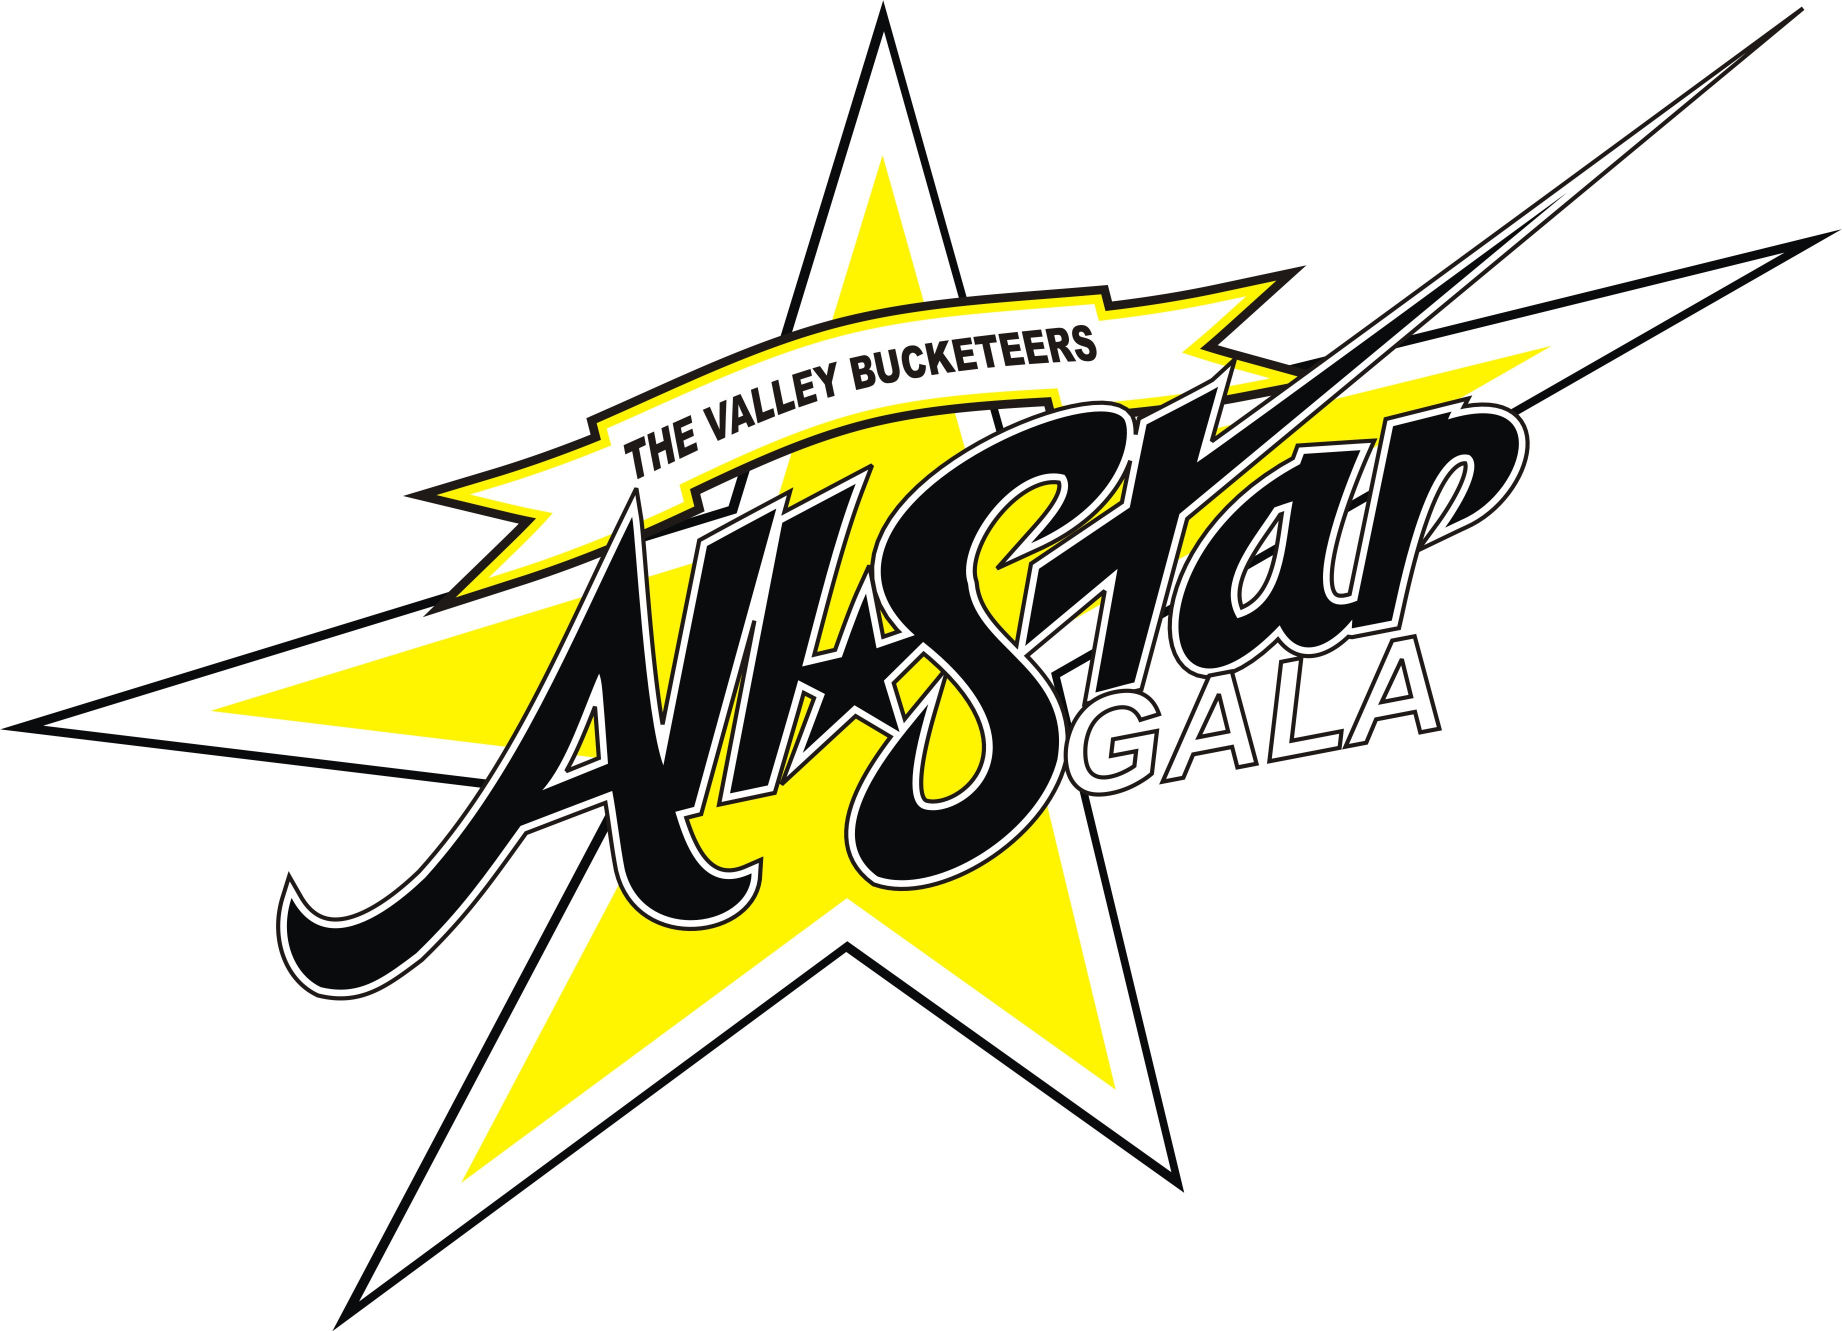 All*Star Gala 2012 Op zaterdagavond 16 juni organiseert basketbalvereniging The Valley Bucketeers weer haar jaarlijkse All*Star Gala om het seizoen goed af te sluiten.